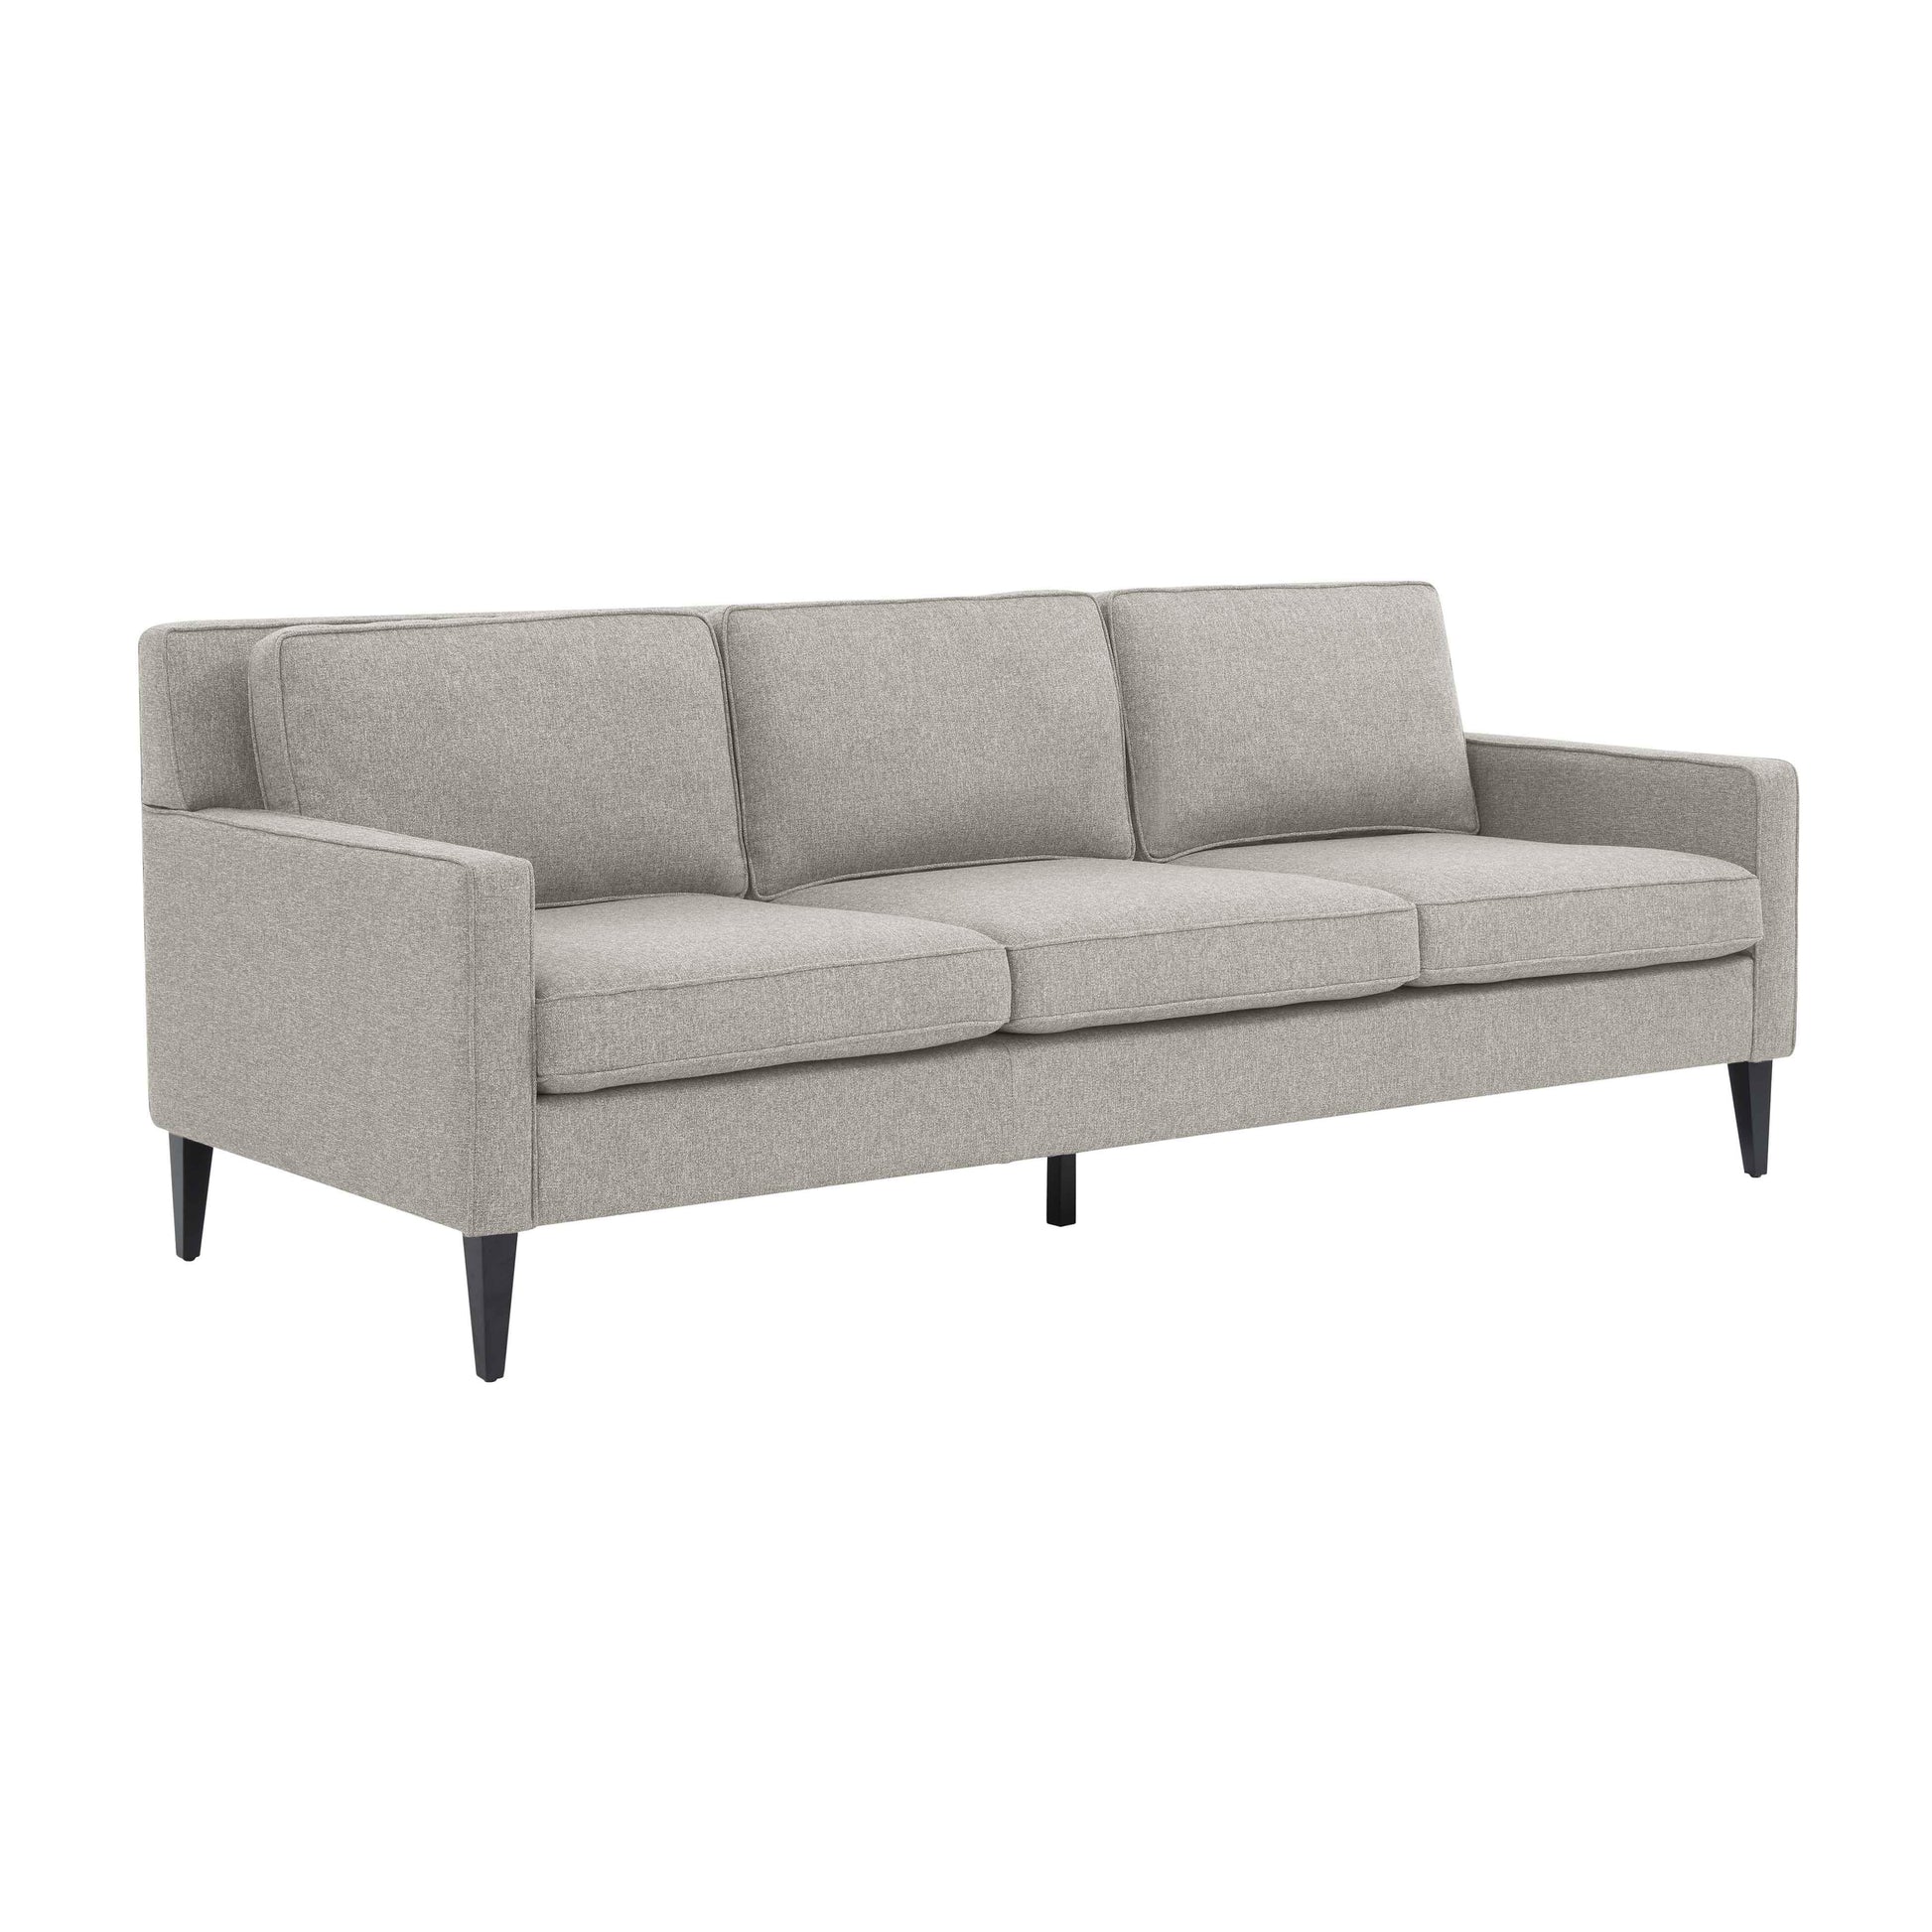 Tov Furniture Luna Beige Sofa